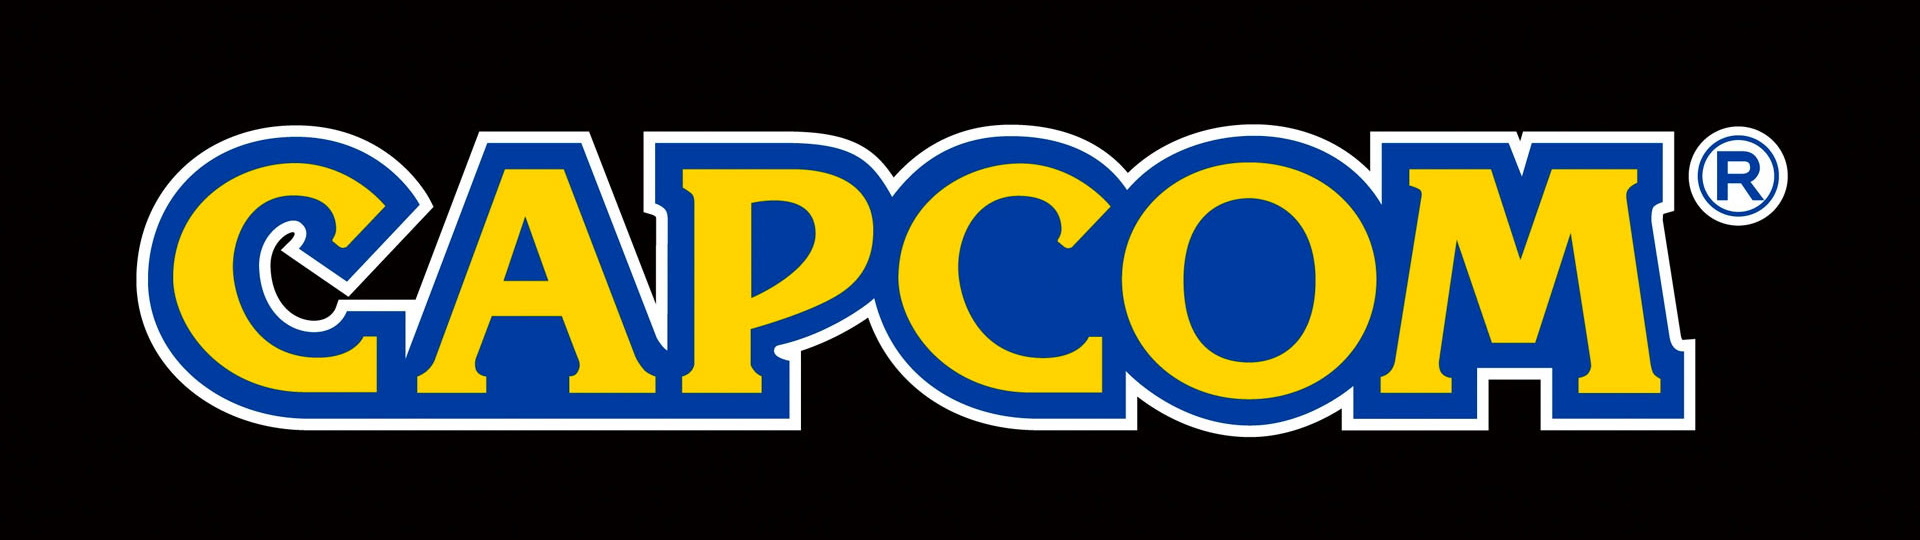 Capcom bude mít na Tokyo Games Show dvouhodinovou prezentaci | Novinky